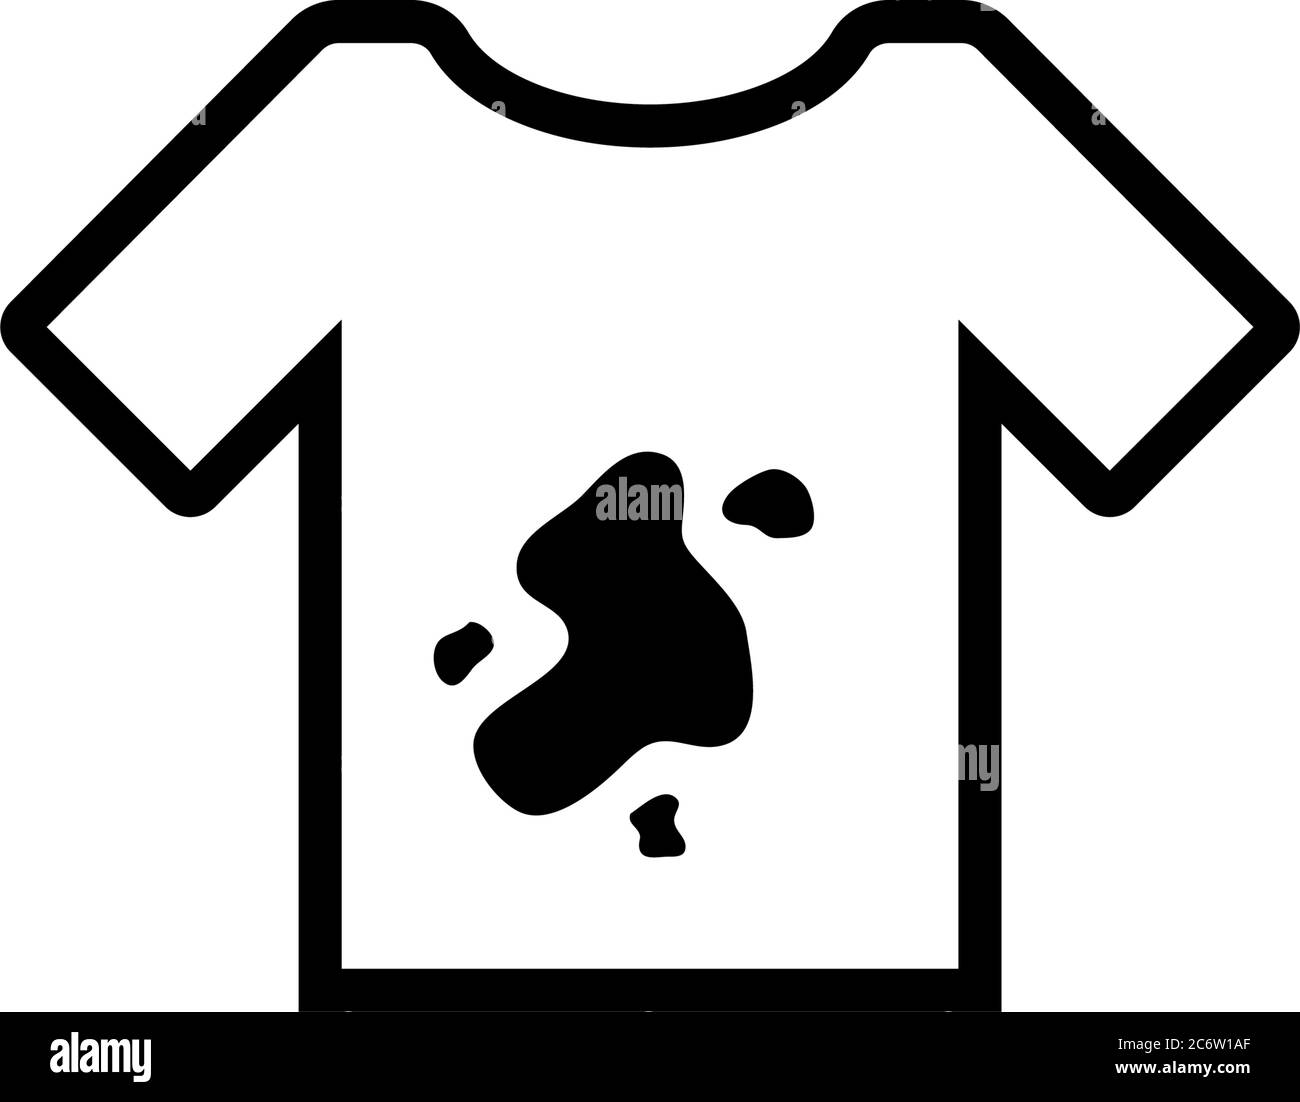 Schmutziges T-Shirt, T-Shirt mit s Einfaches Schmutz für auf - Flecken T-Shirt, Symbol Schmutziges Hintergrund. Alamy flache Symbols des T-Shirt mit Abbildung Vektorgrafik. Flecken Stock-Vektorgrafik weißem schwarzes Schmutz